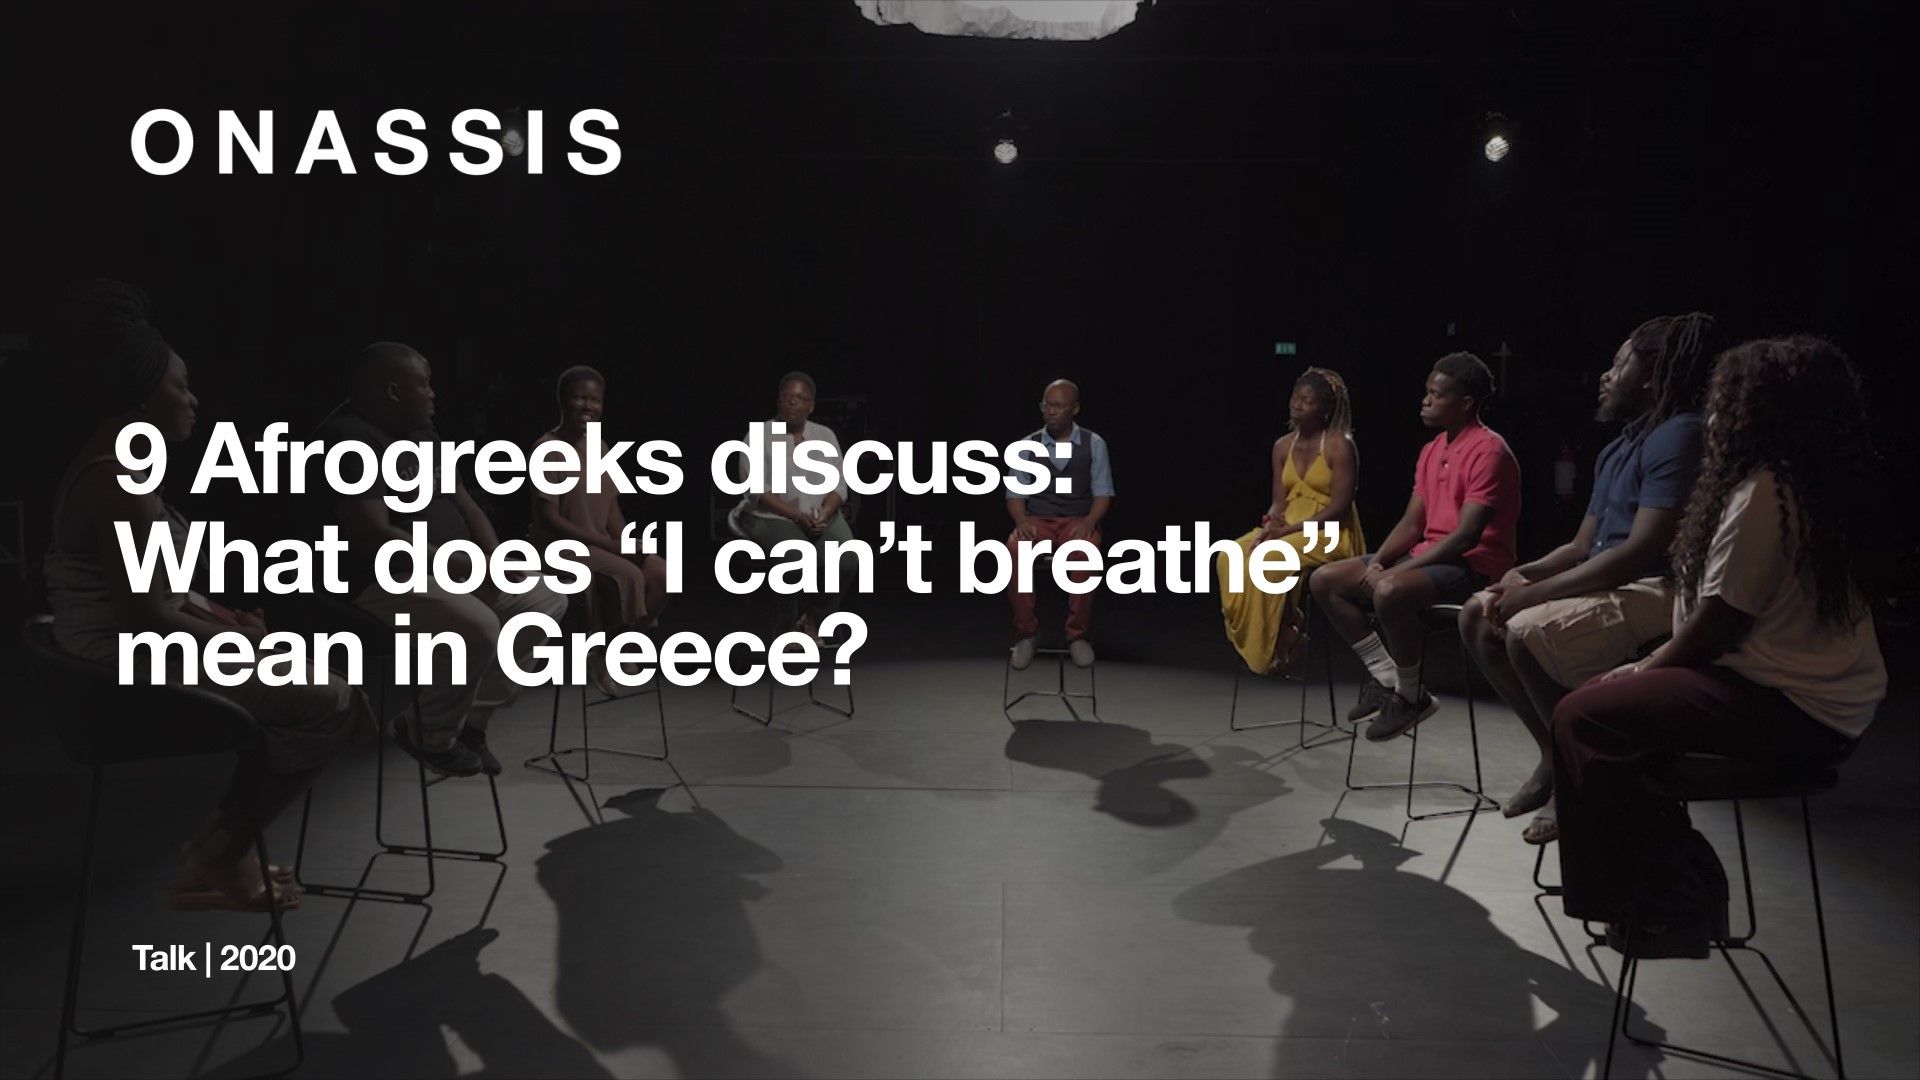 Τι σημαίνει «Δεν μπορώ να αναπνεύσω» στην Ελλάδα;